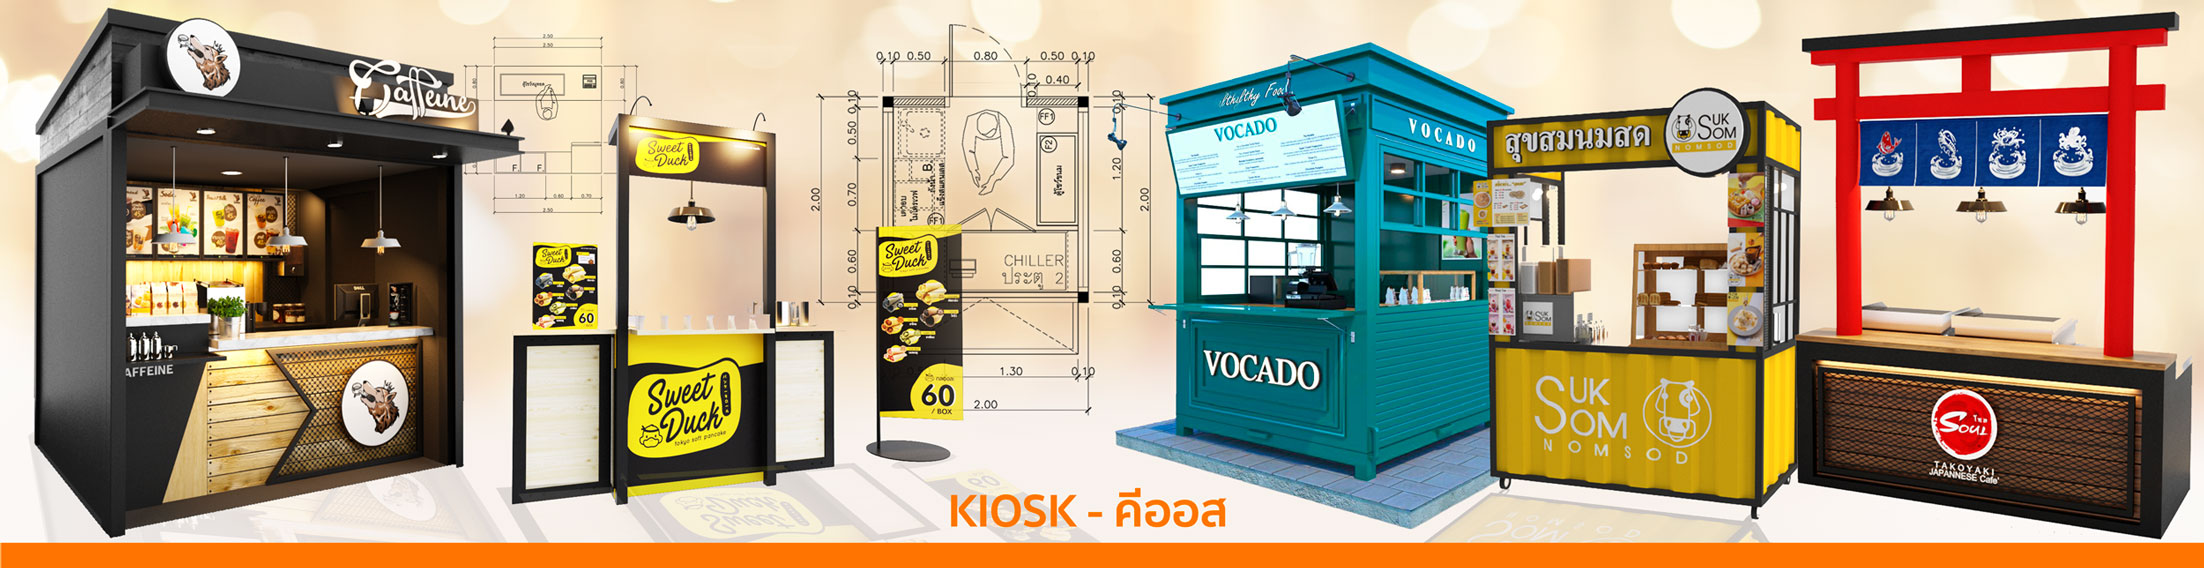 ออกแบบคีออส Kiosk ร้านค้าขนาดเล็ก